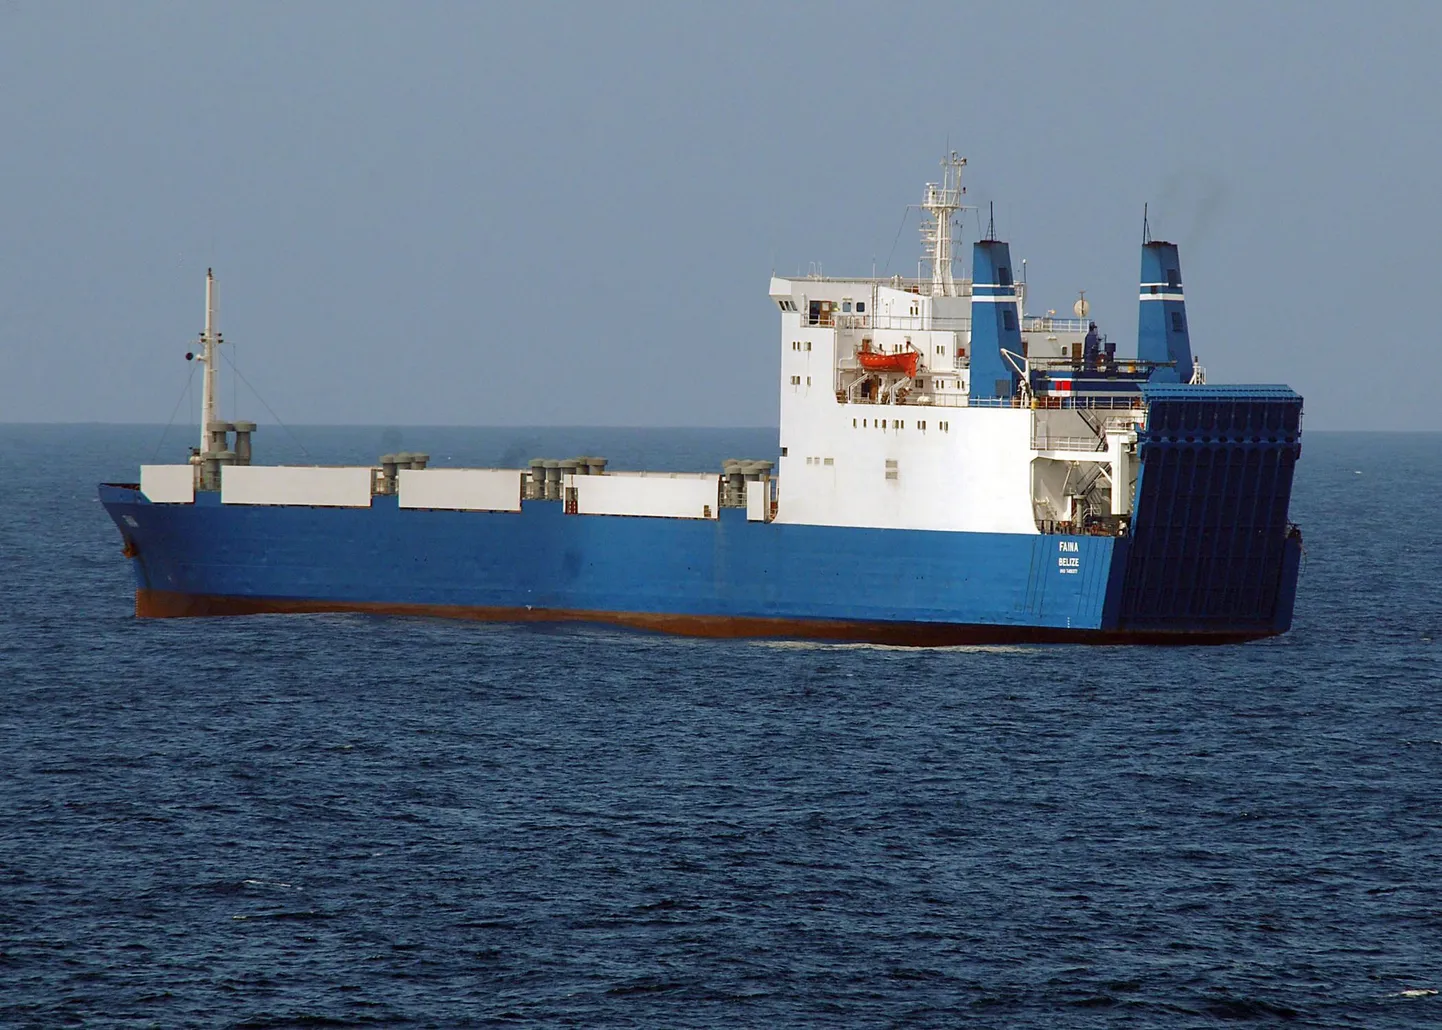 Somaalia piraadid kaaperdasid Ukraina kaubalaeva Faina septembris.